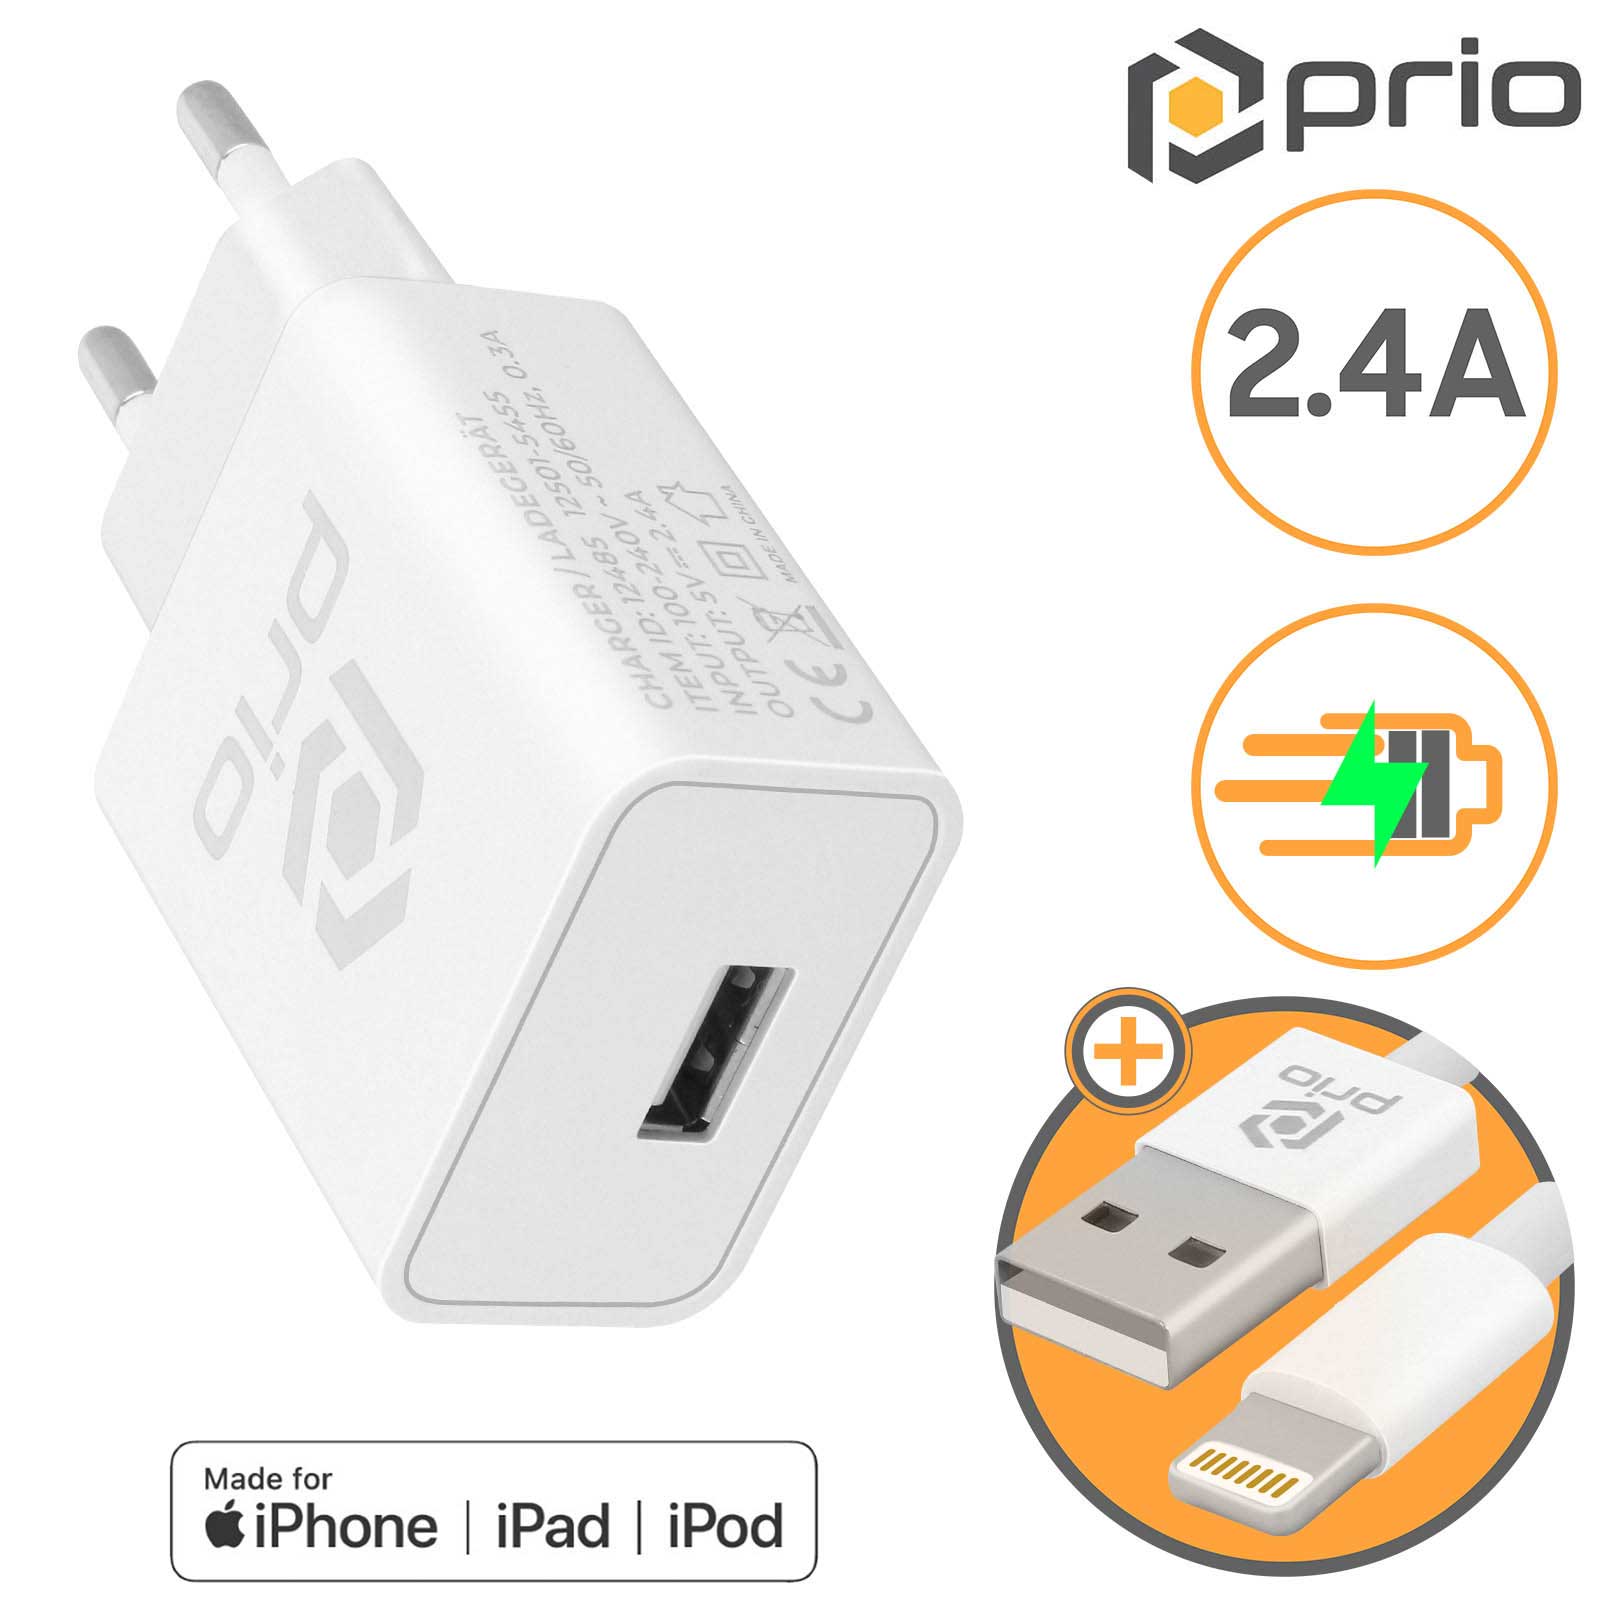 Chargeur iPhone + câble lightning, charge rapide 2.4A certifié MFI,  Prio-Blanc - Français